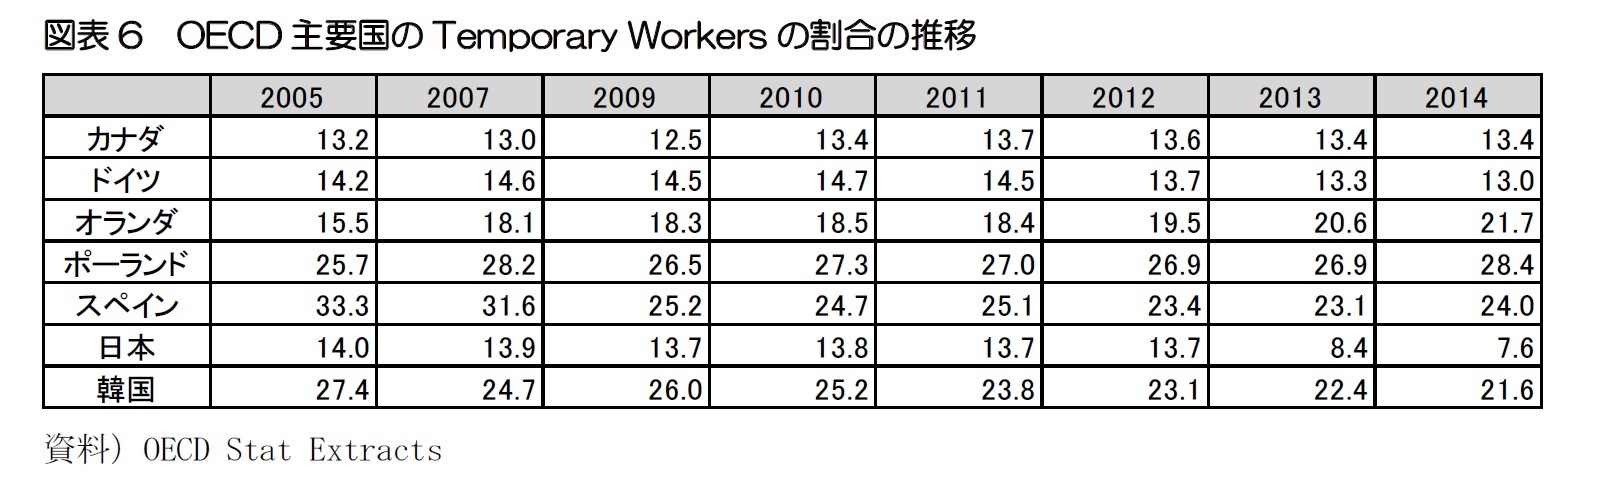 図表6　OECD主要国のTemporary Workersの割合の推移